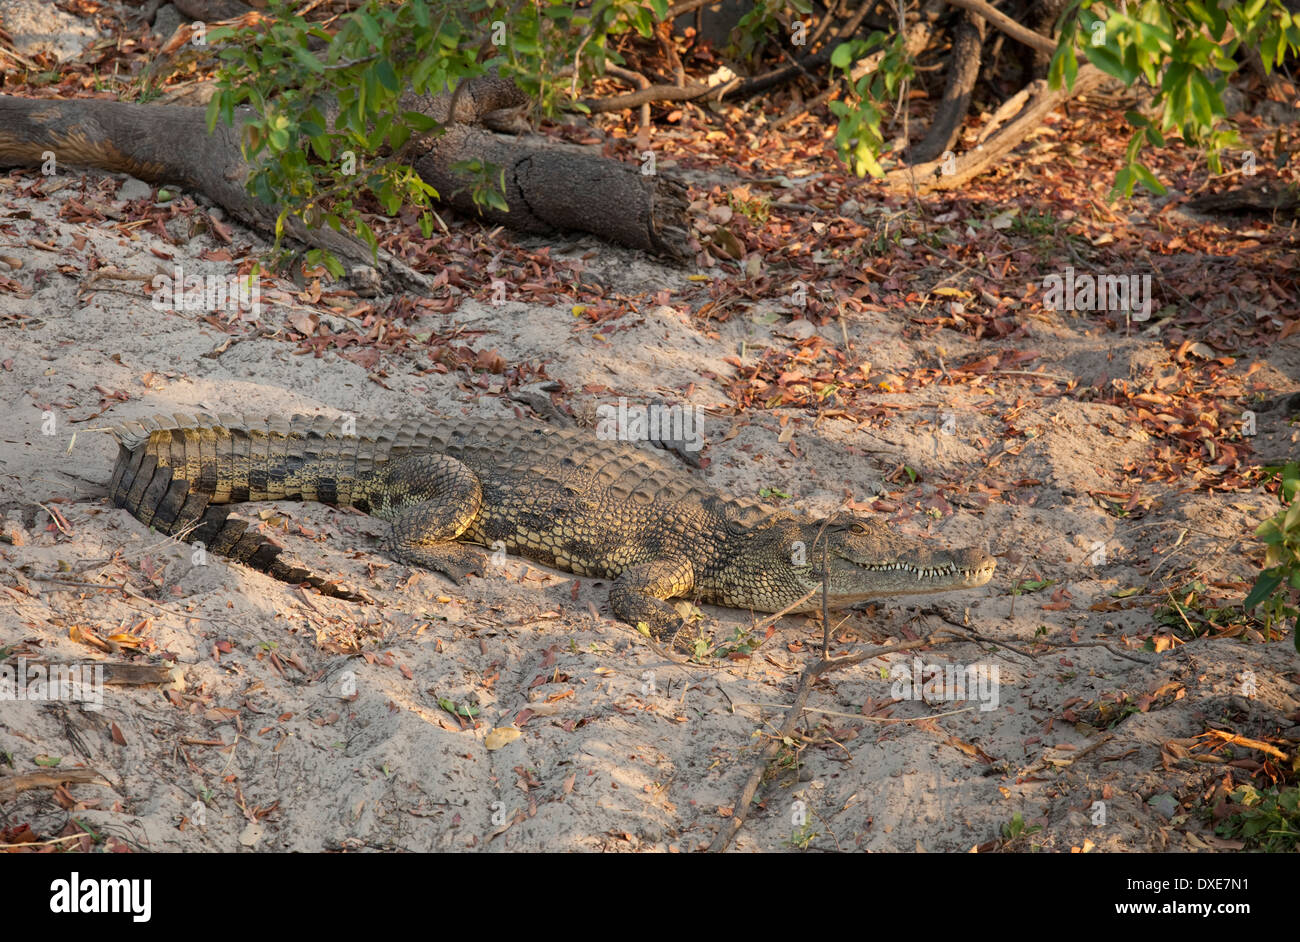 Crocodile on bank Zambezi Valley near Livingstone Zambia Stock Photo